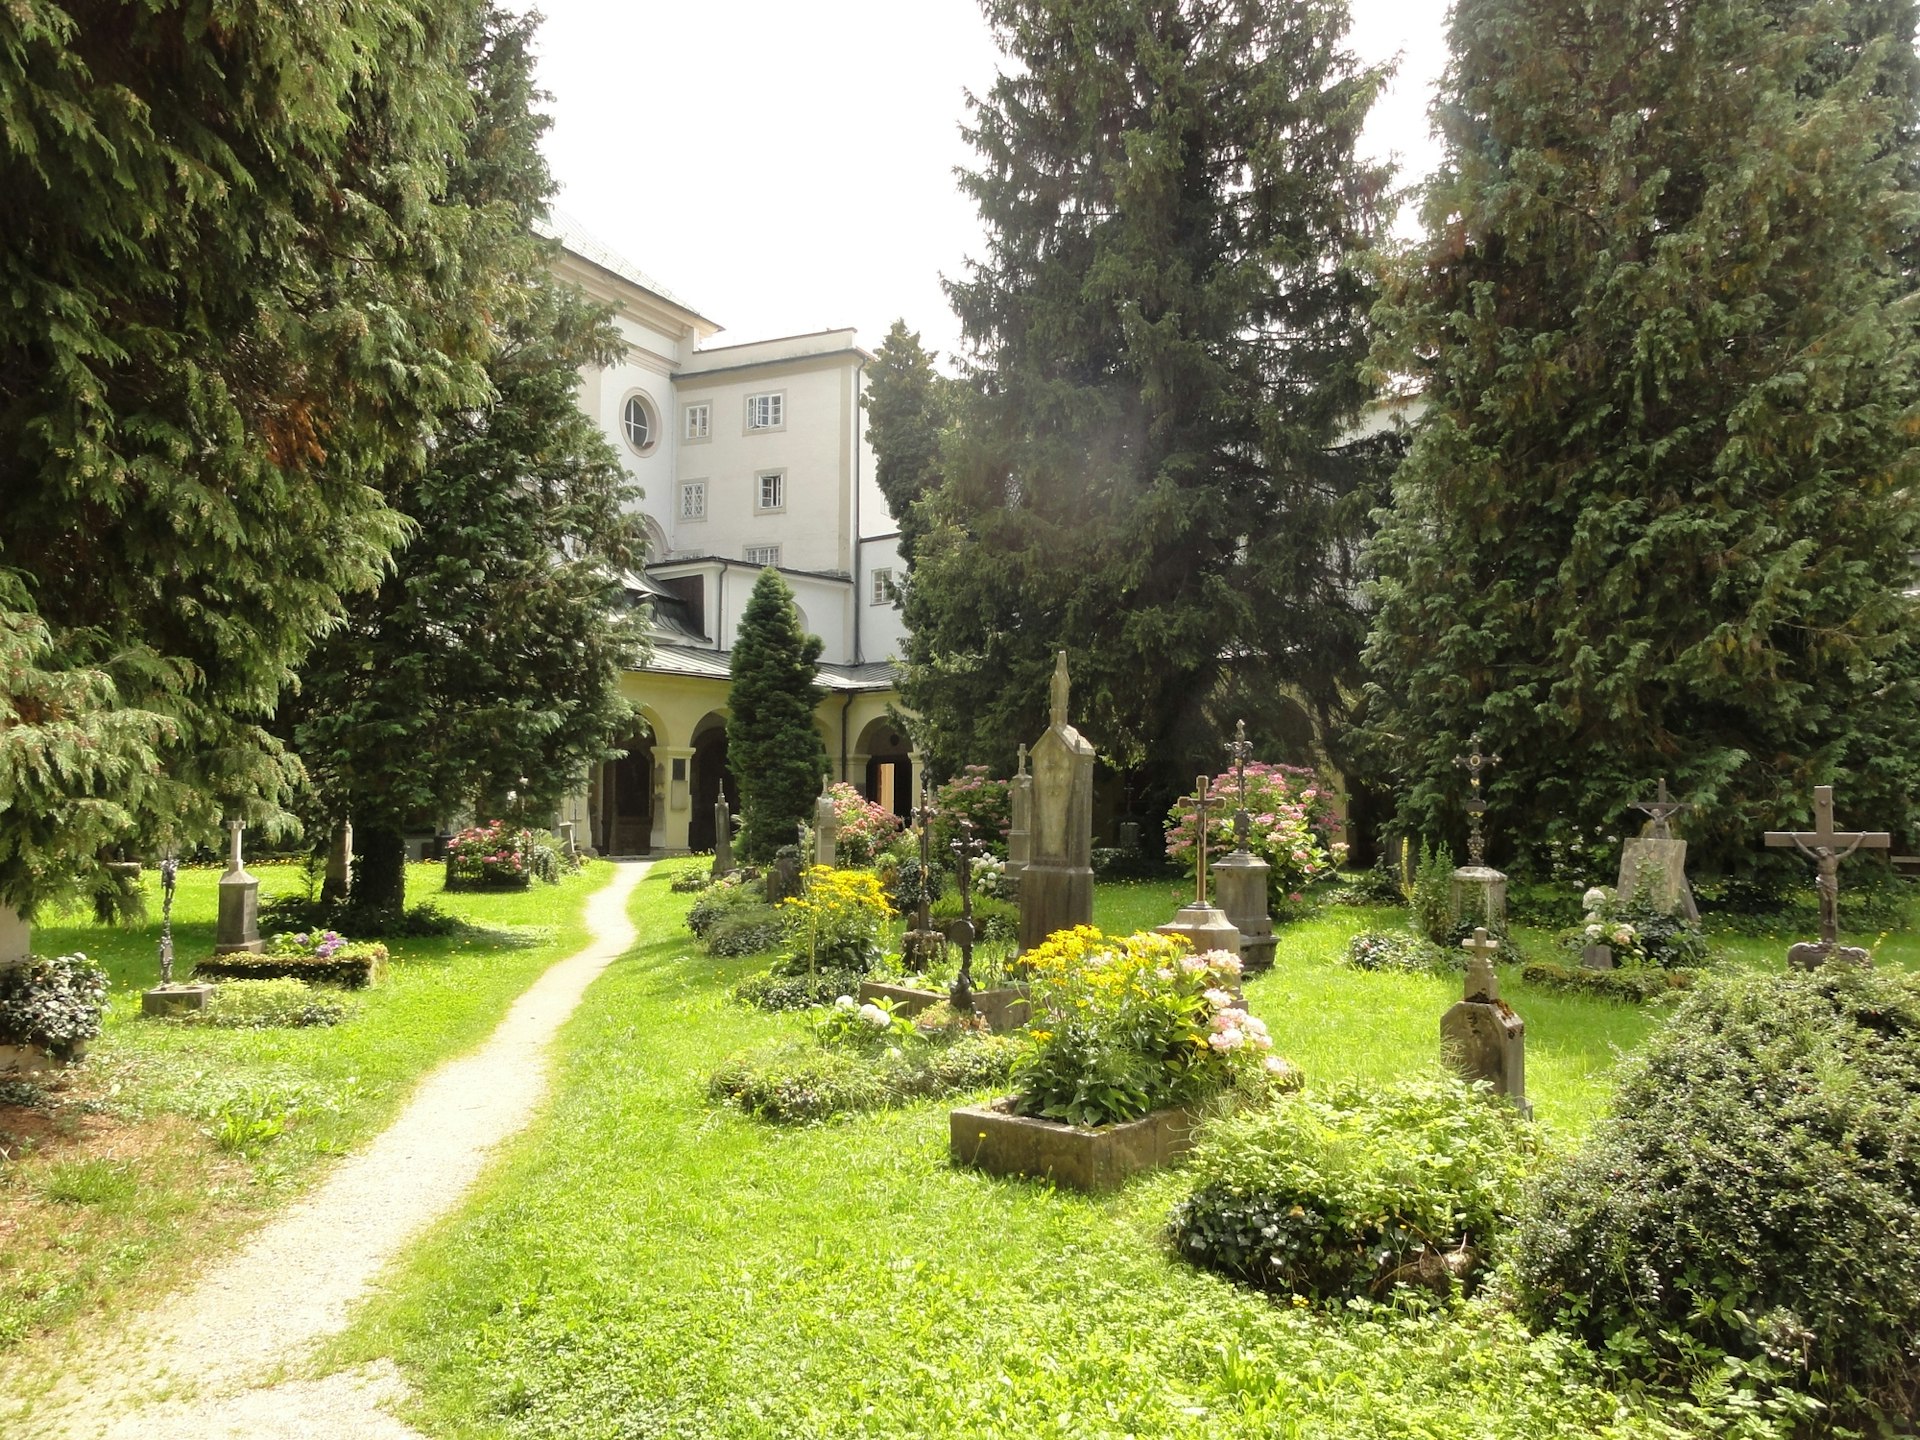 A worn path through the graveyard of St. Sebastian's Church in Salzburg